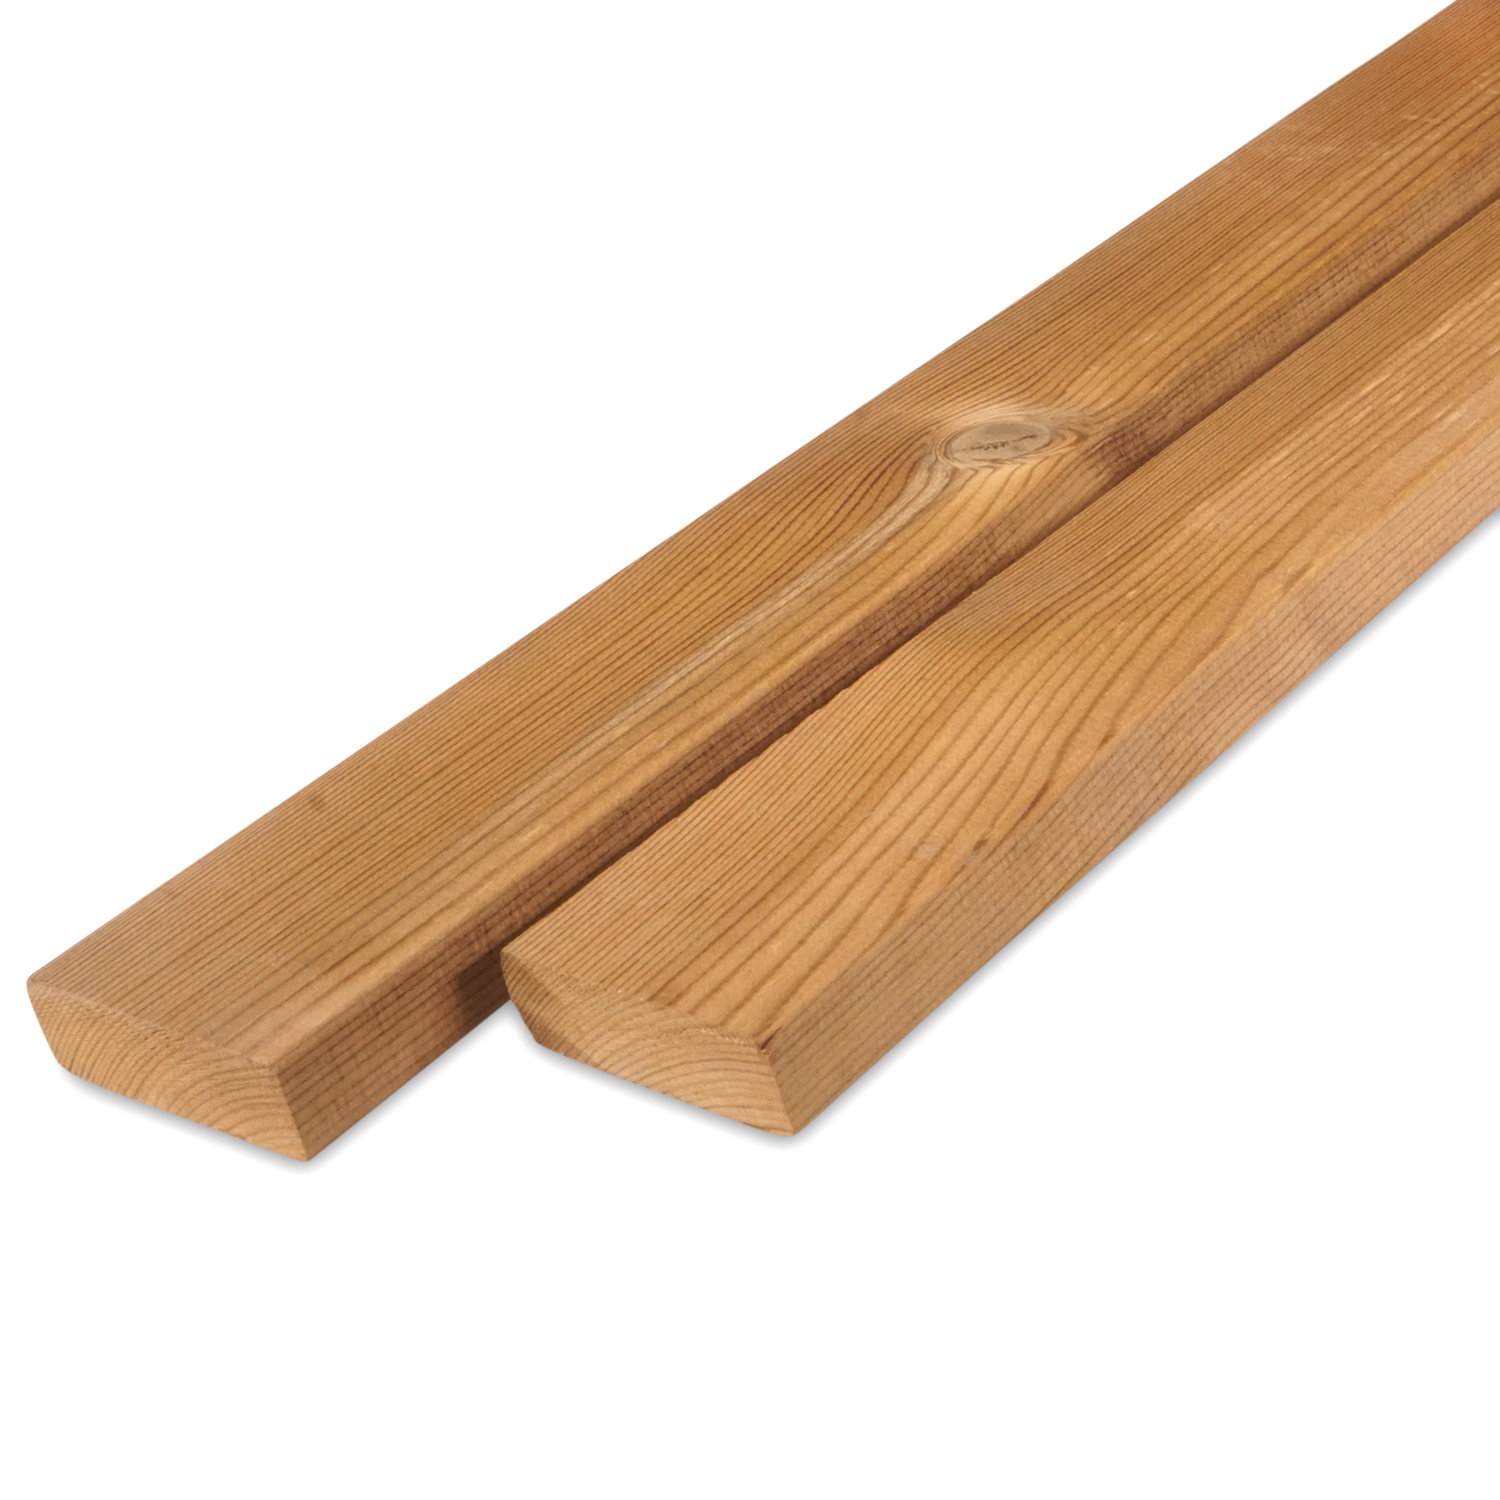  Thermowood grenen rhombus deel - profiel - plank 21x70mm - geschaafd - kunstmatig gedroogd (kd 8-12%) - thermisch gemodificeerd grenen hout (thermohout)